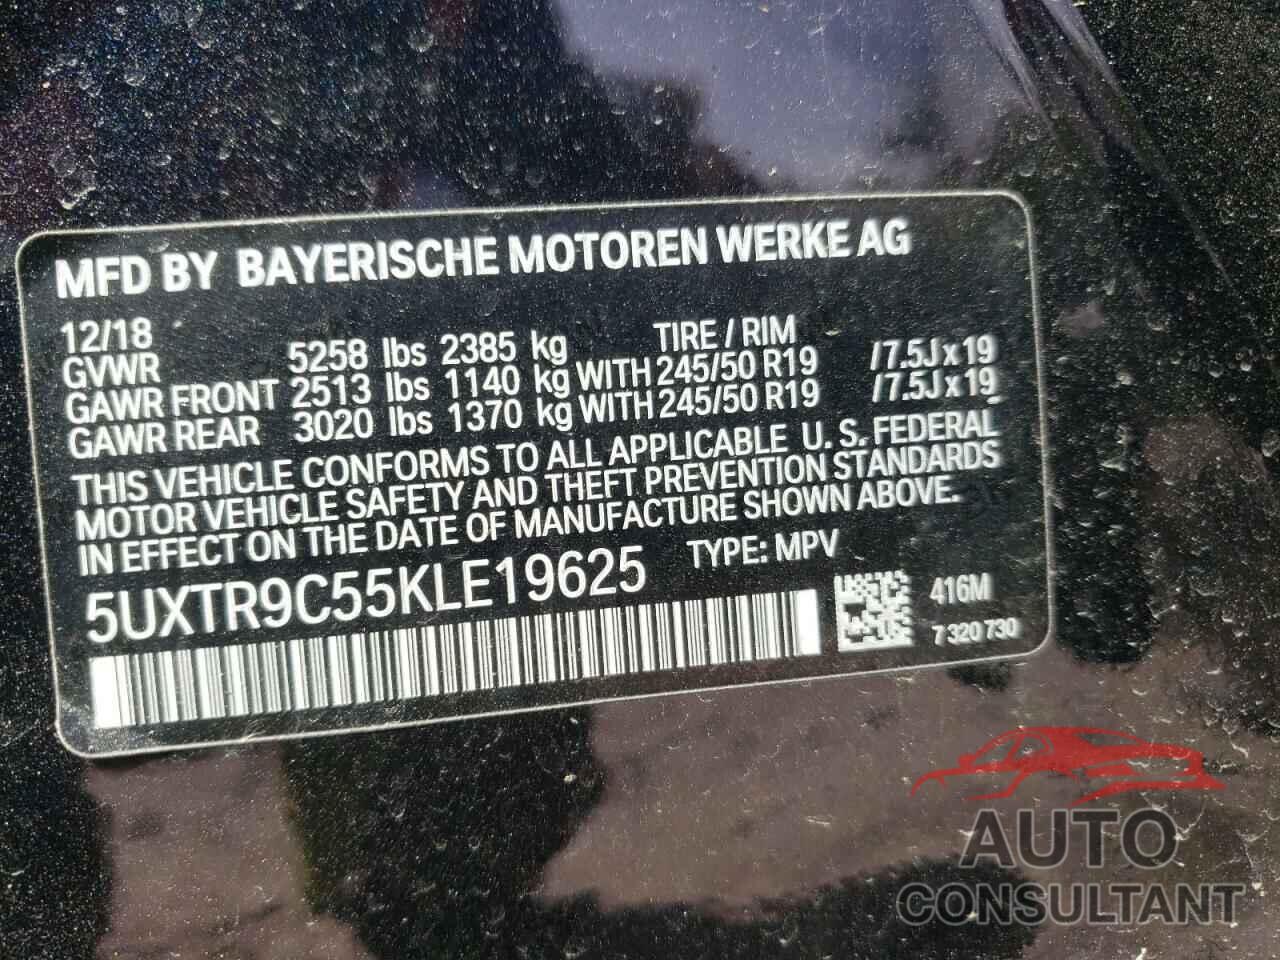 BMW X3 2019 - 5UXTR9C55KLE19625